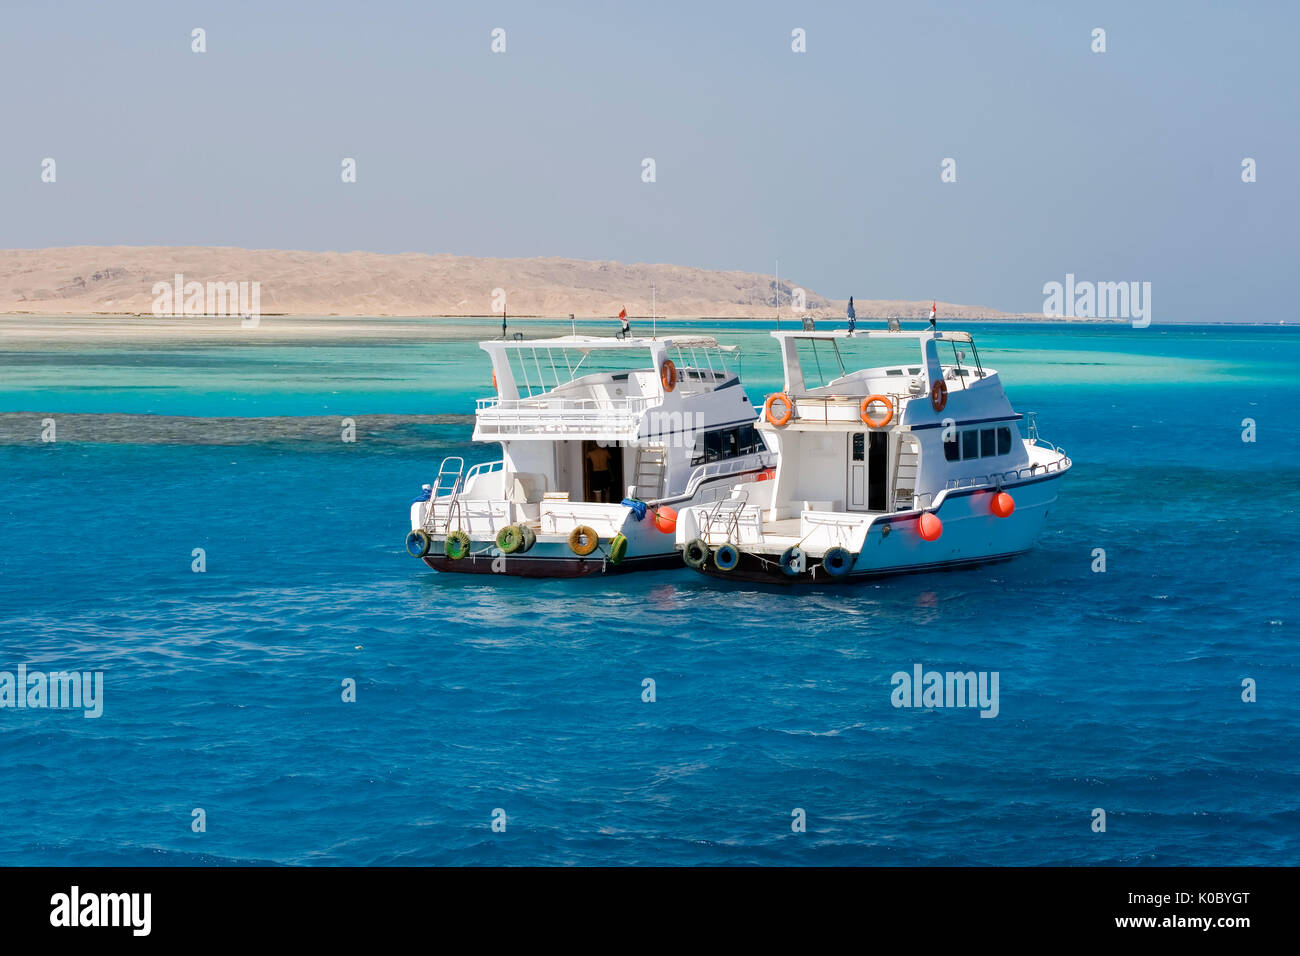 Dos yates anclados fuera giftin isla en el mar rojo, una atracción turística popular destintion Foto de stock